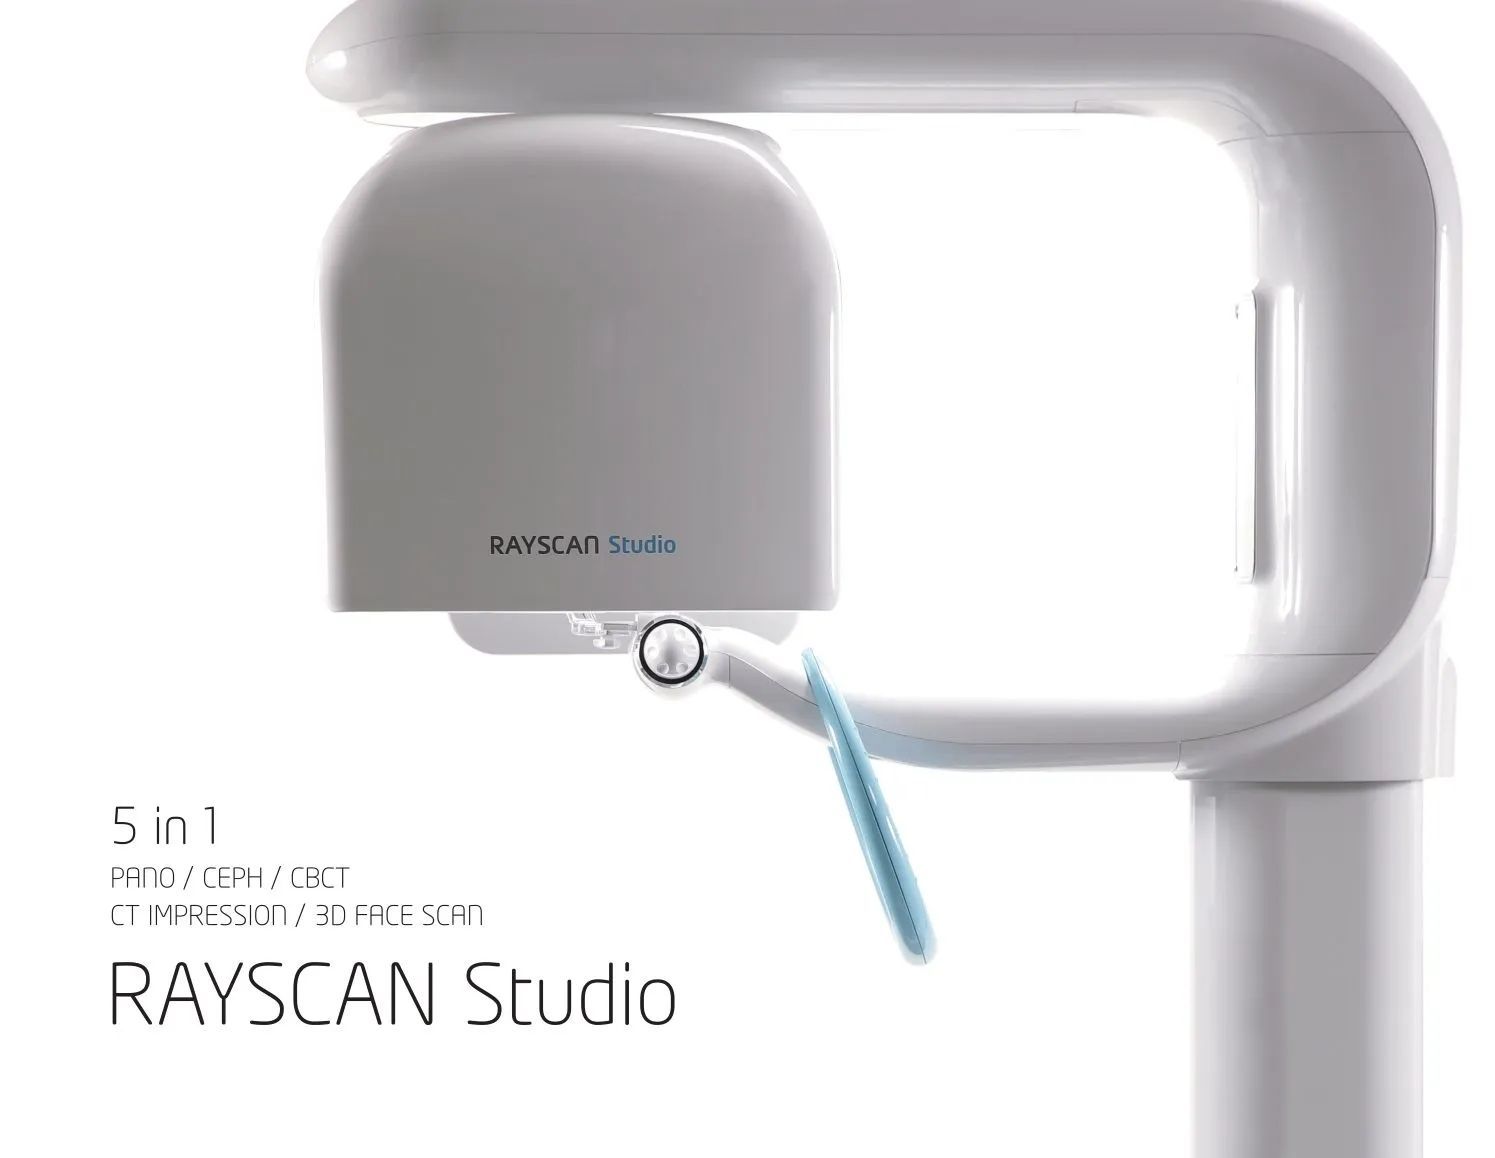 Reayscan Studio — Kingston, NY — Kingston Dental Associates
